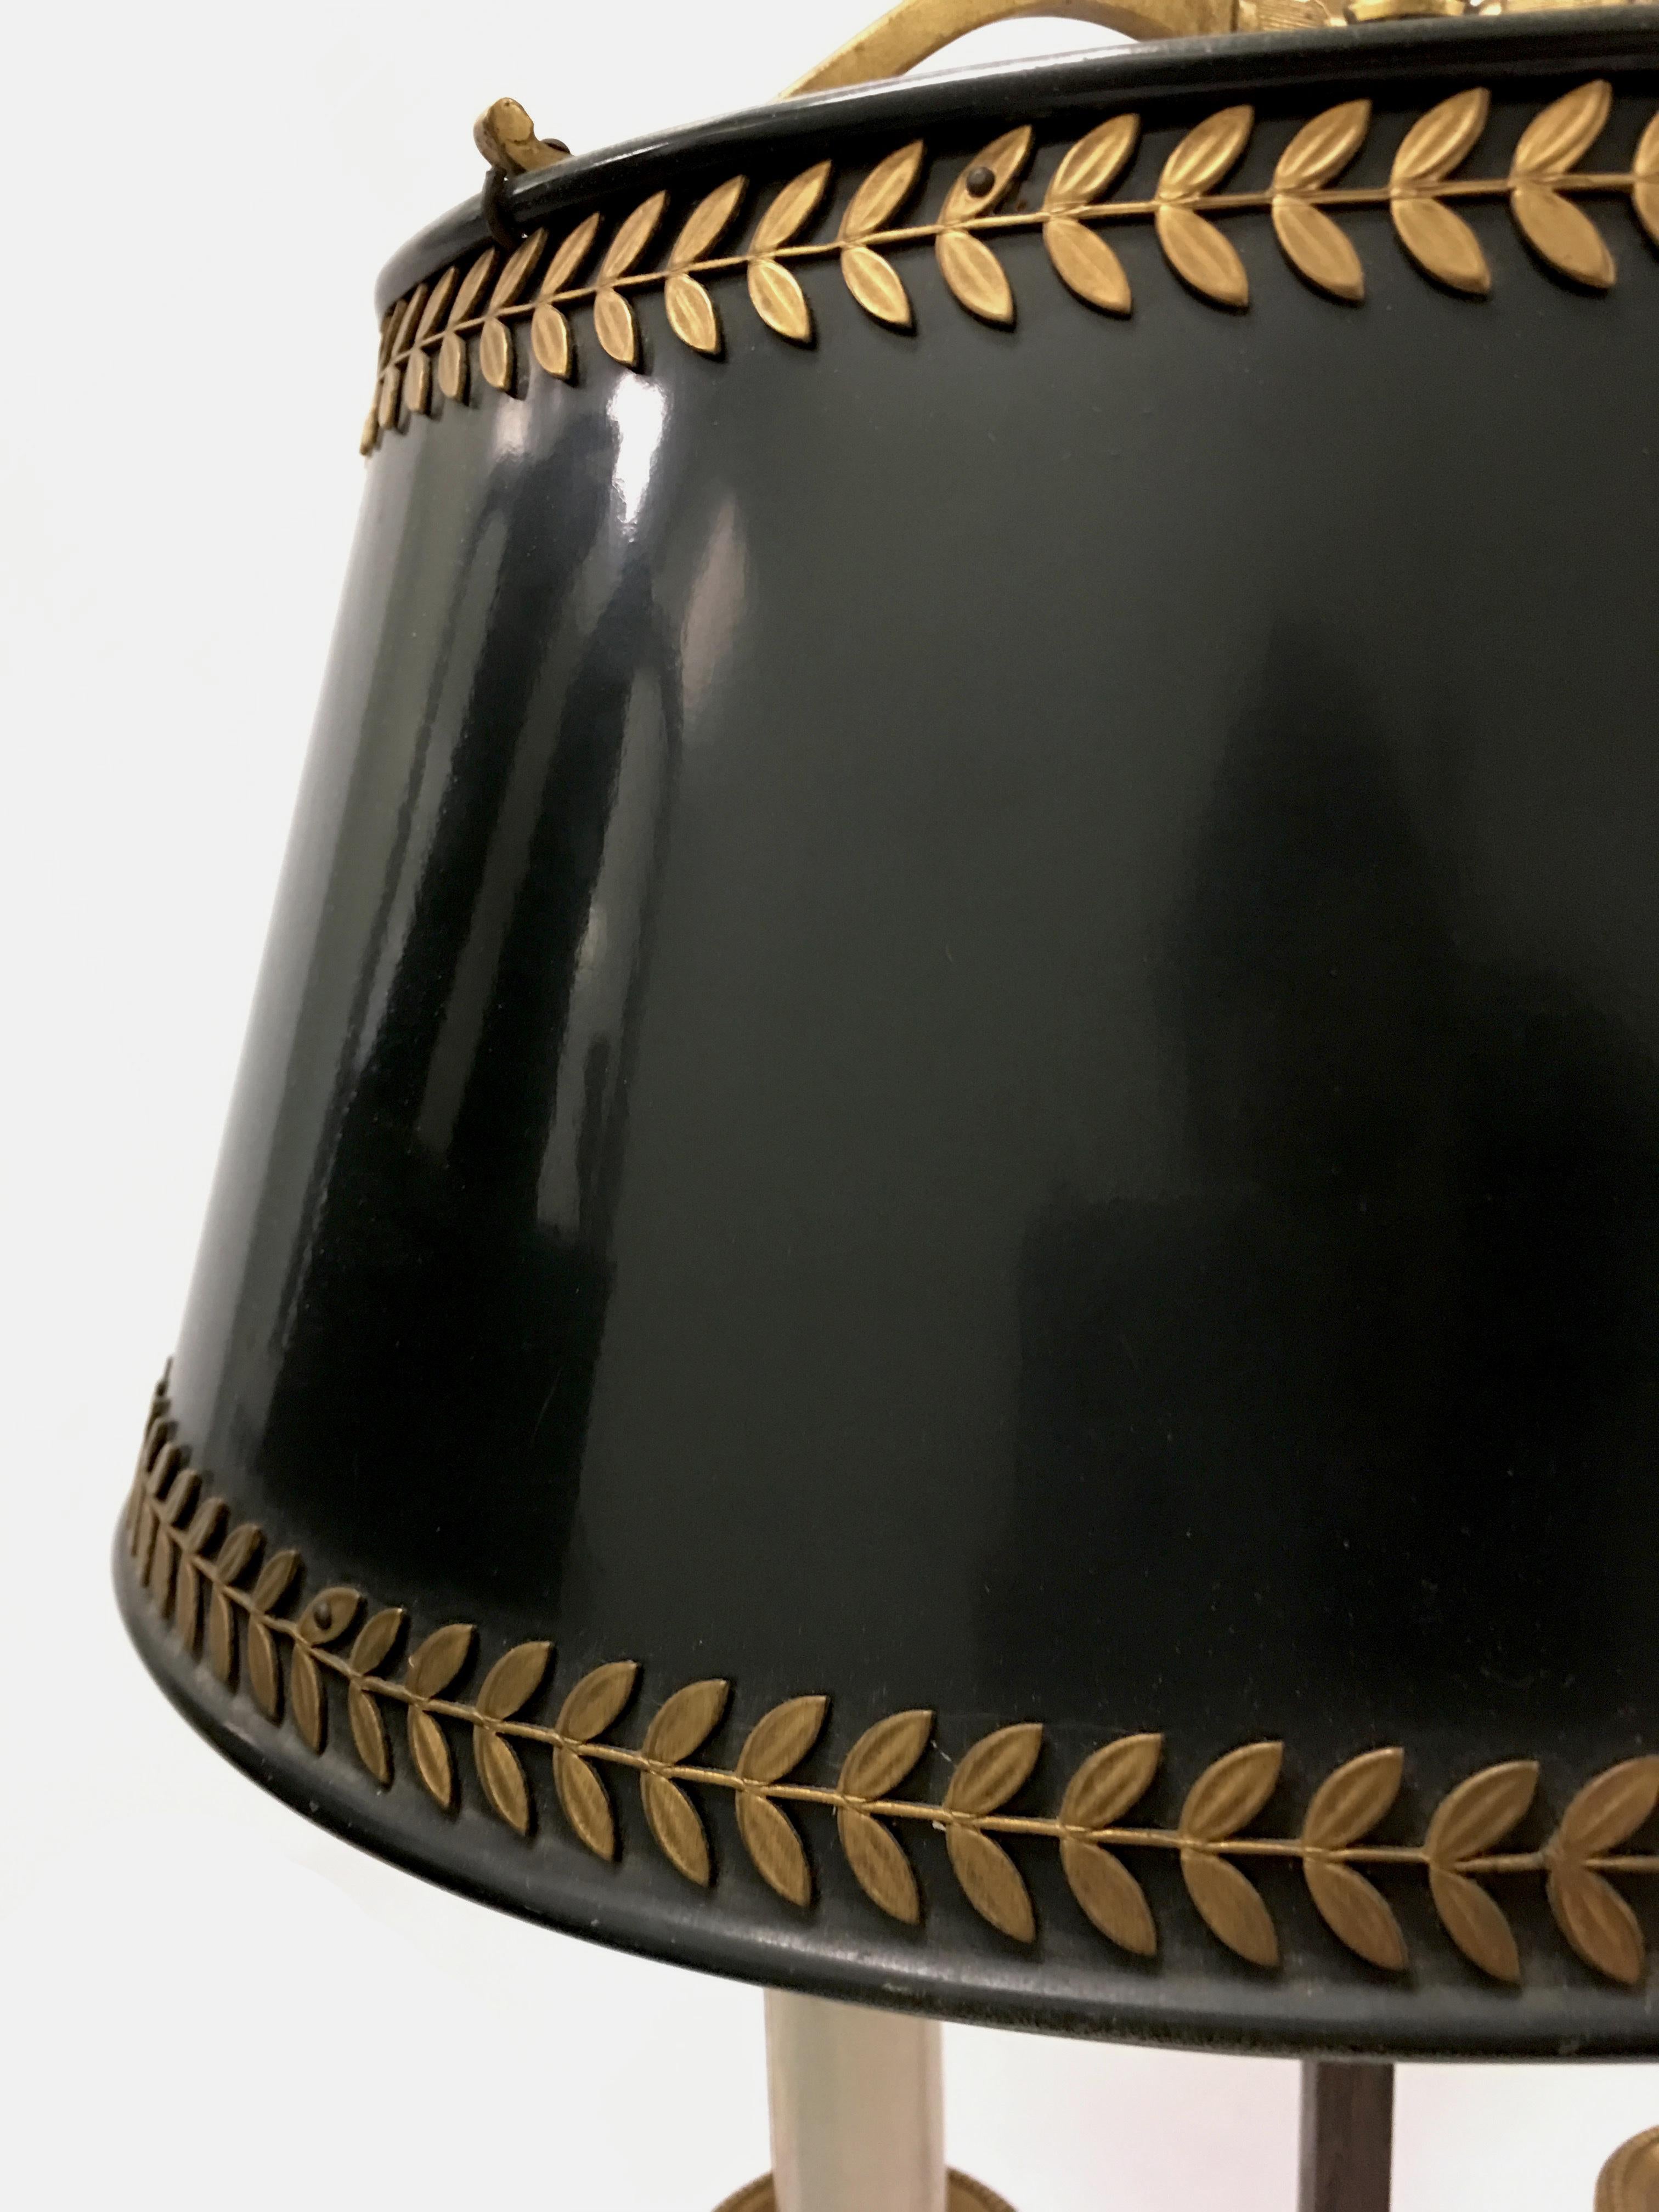 Lampe à bouillotte directoire de la fin du 19e siècle. La lampe présente des éléments d'origine et un abat-jour en tole noir avec des détails appliqués en feuilles de laiton doré. Nouveau câblage avec interrupteur latéral. La lampe peut recevoir